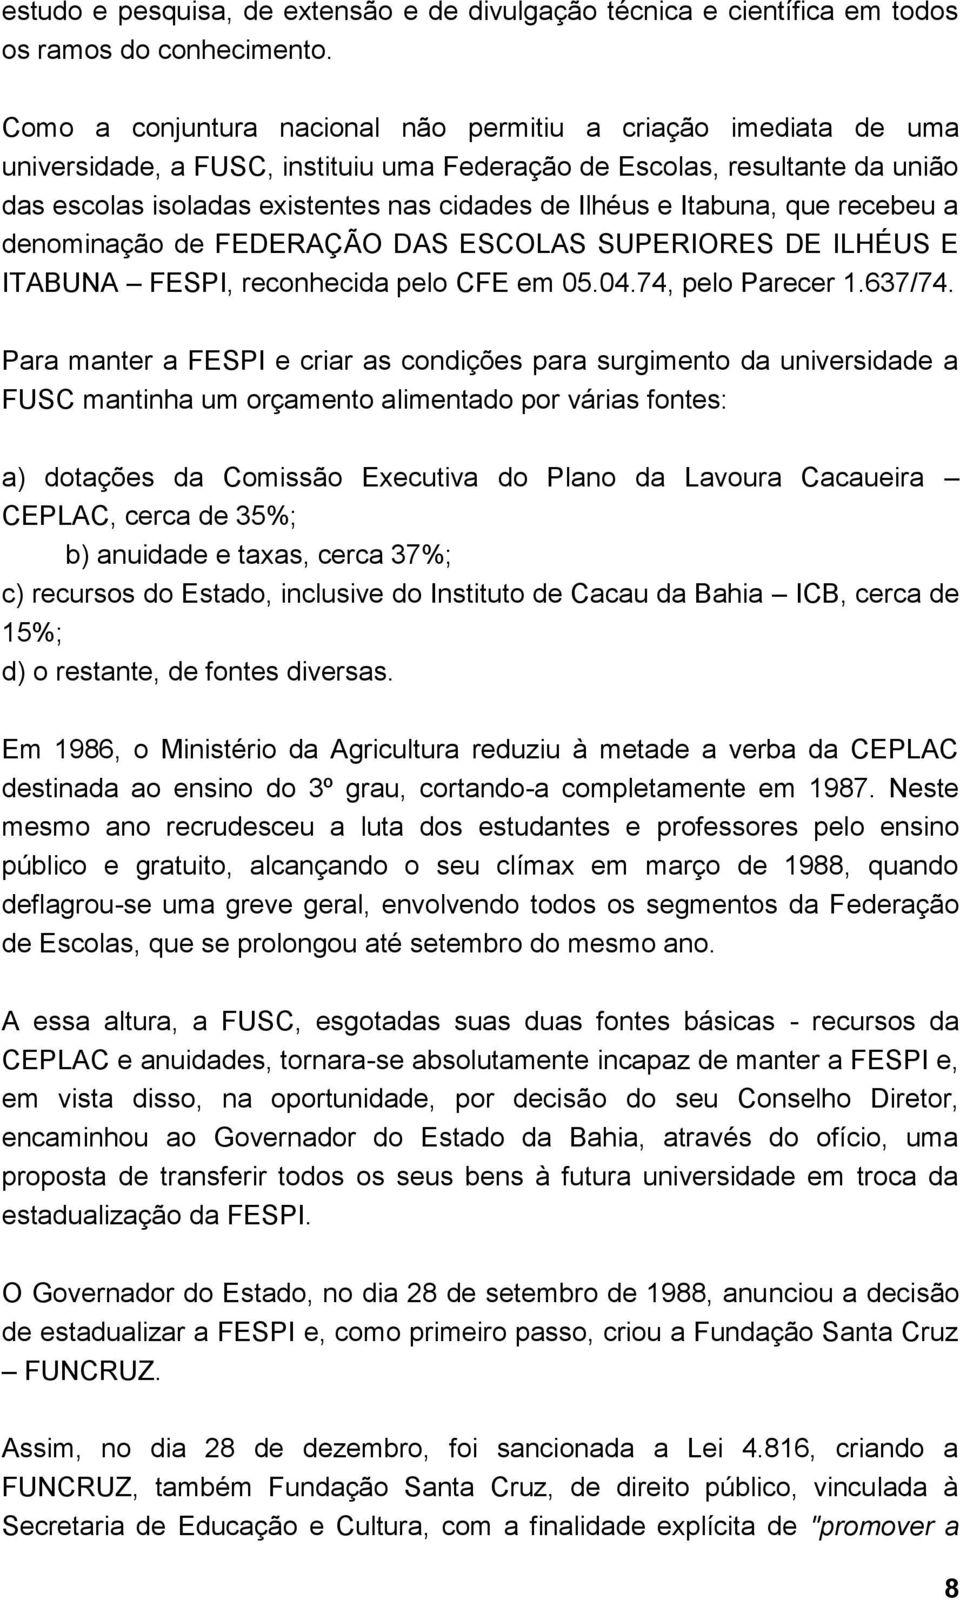 Itabuna, que recebeu a denominação de FEDERAÇÃO DAS ESCOLAS SUPERIORES DE ILHÉUS E ITABUNA FESPI, reconhecida pelo CFE em 05.04.74, pelo Parecer 1.637/74.